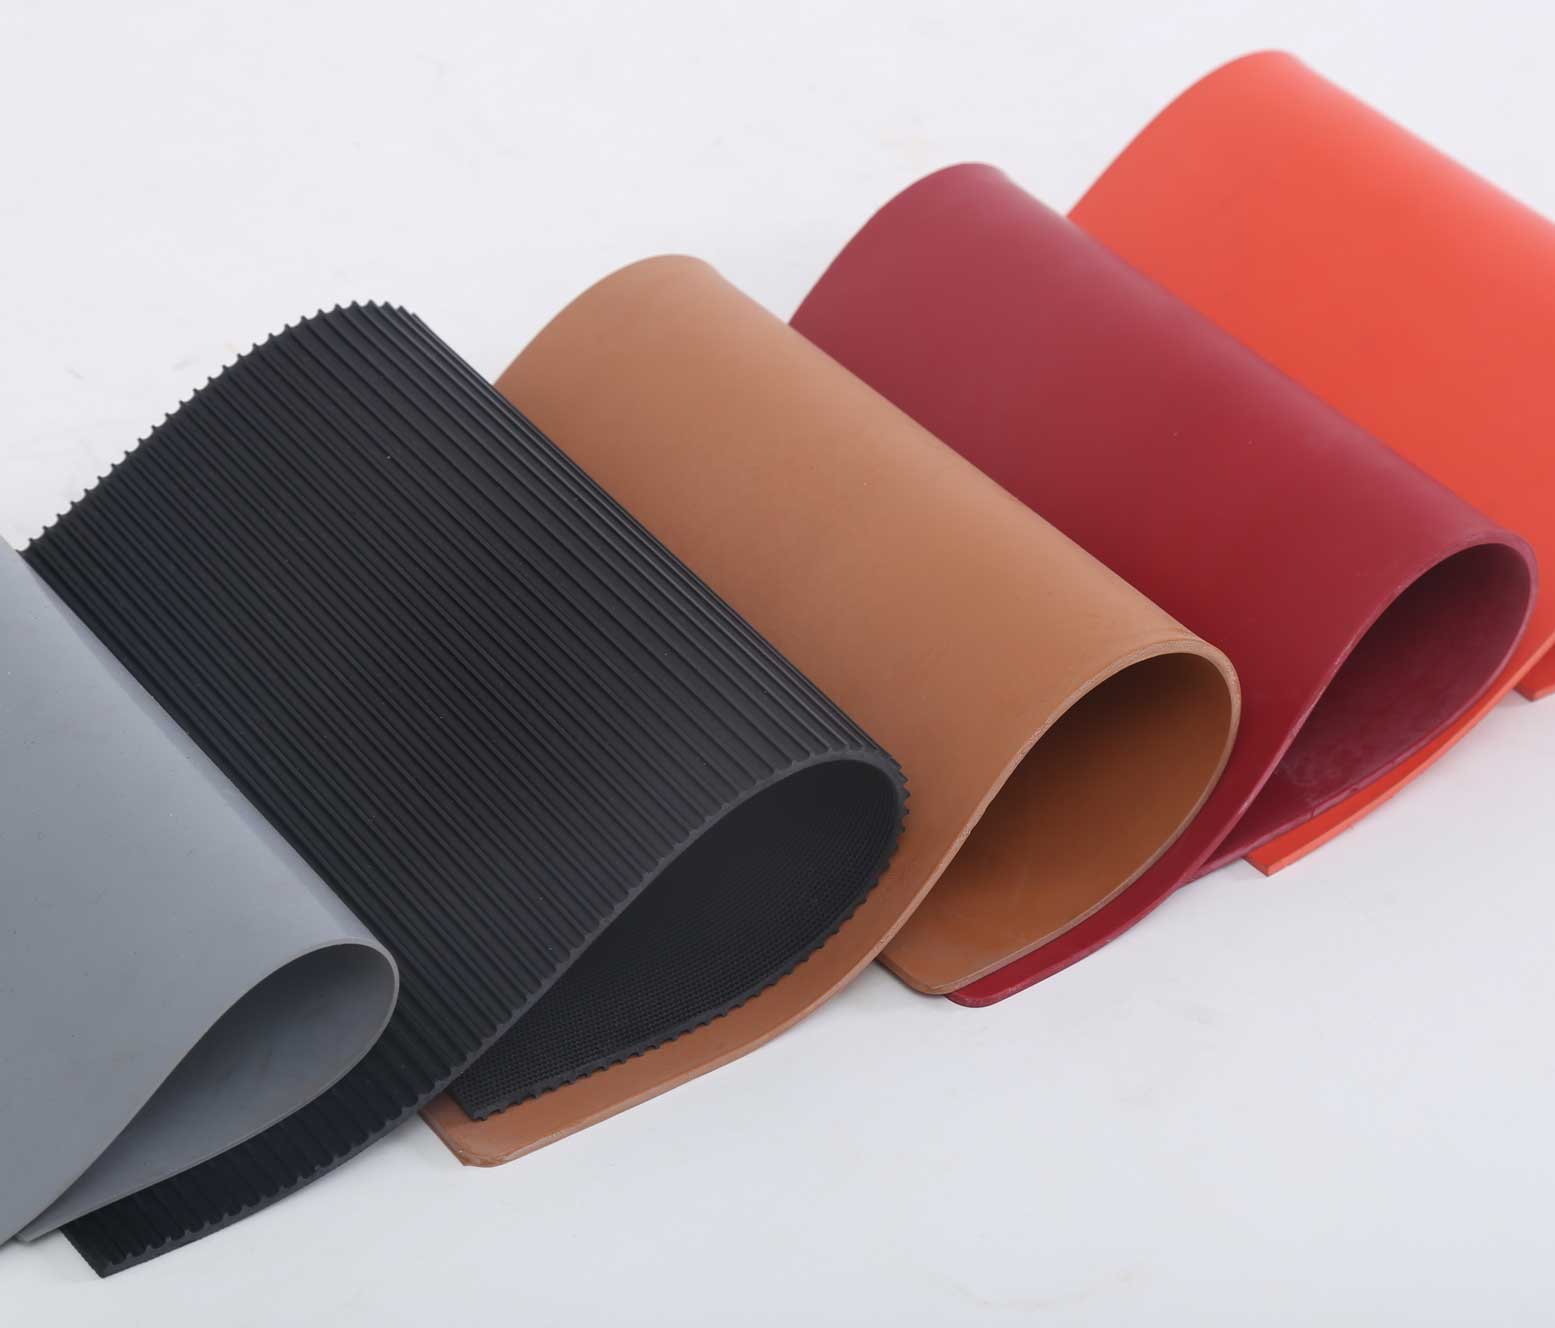 Estera de hoja de caucho natural resistente al desgaste suave, flexible, flexible y elástica coloreada